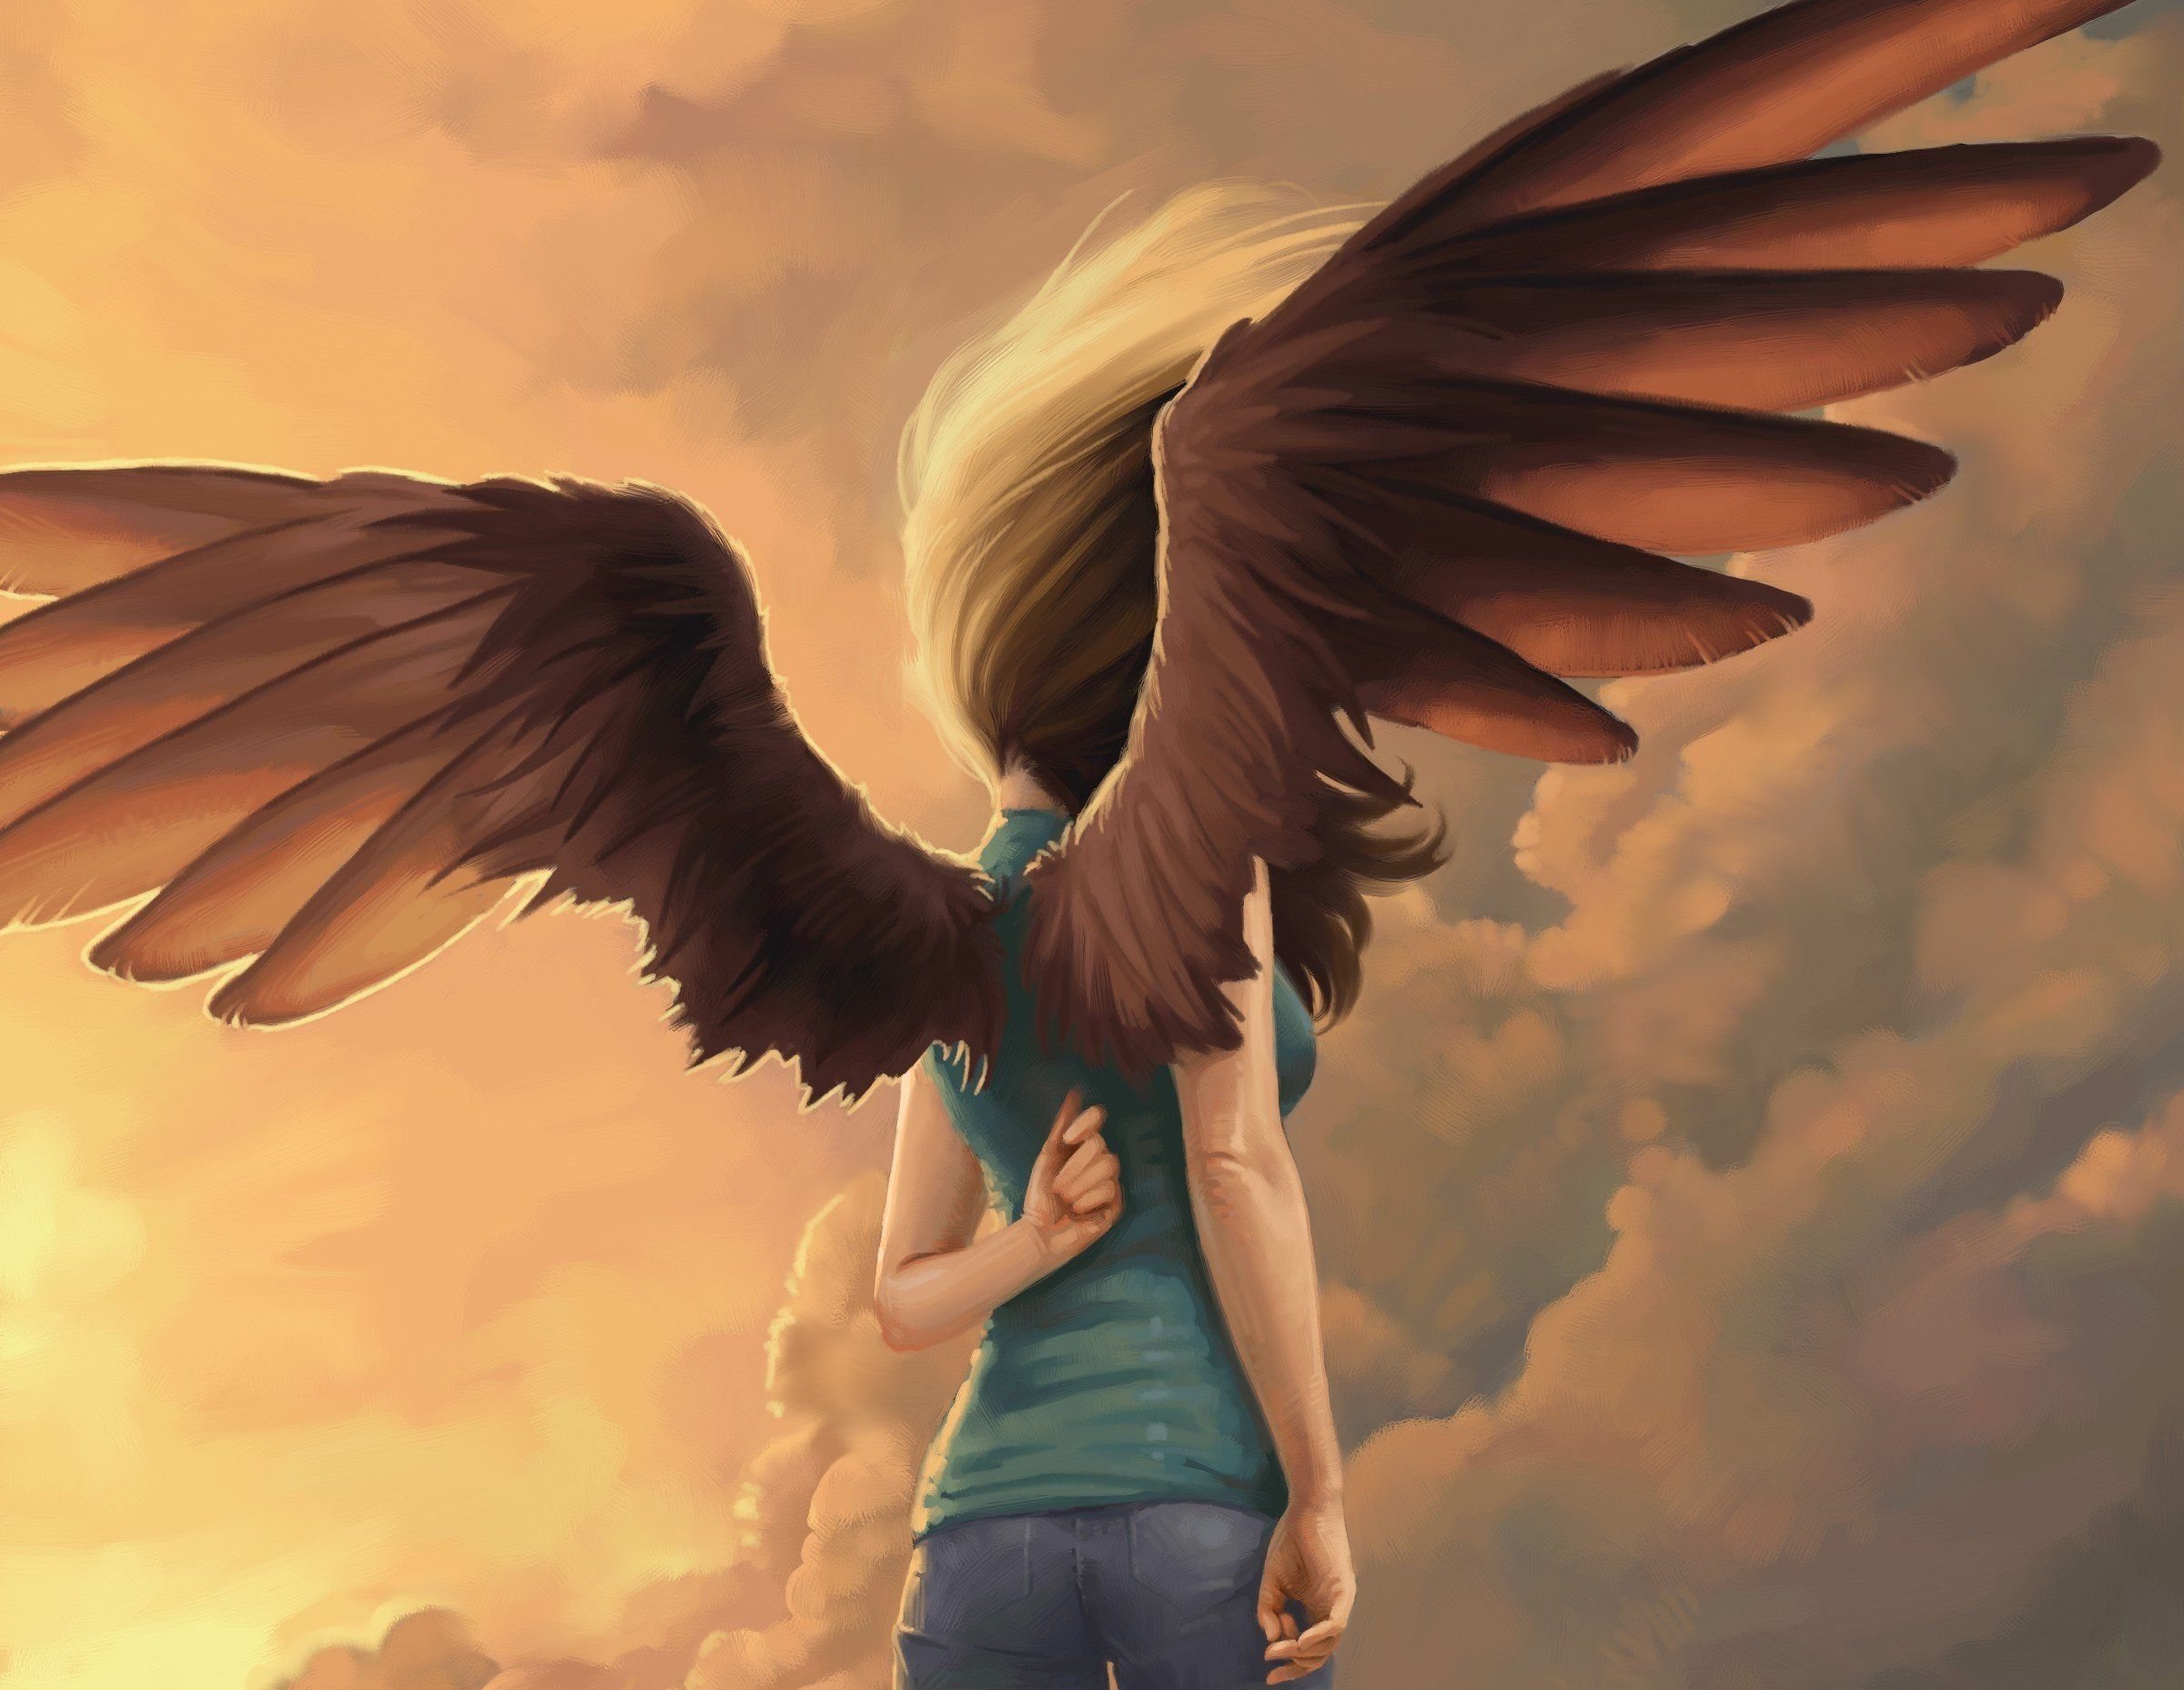 У доброй славы большие крылья. Ангел с крыльями. Девушка с крыльями. Девушка с крыльями арт. Человек с крыльями.